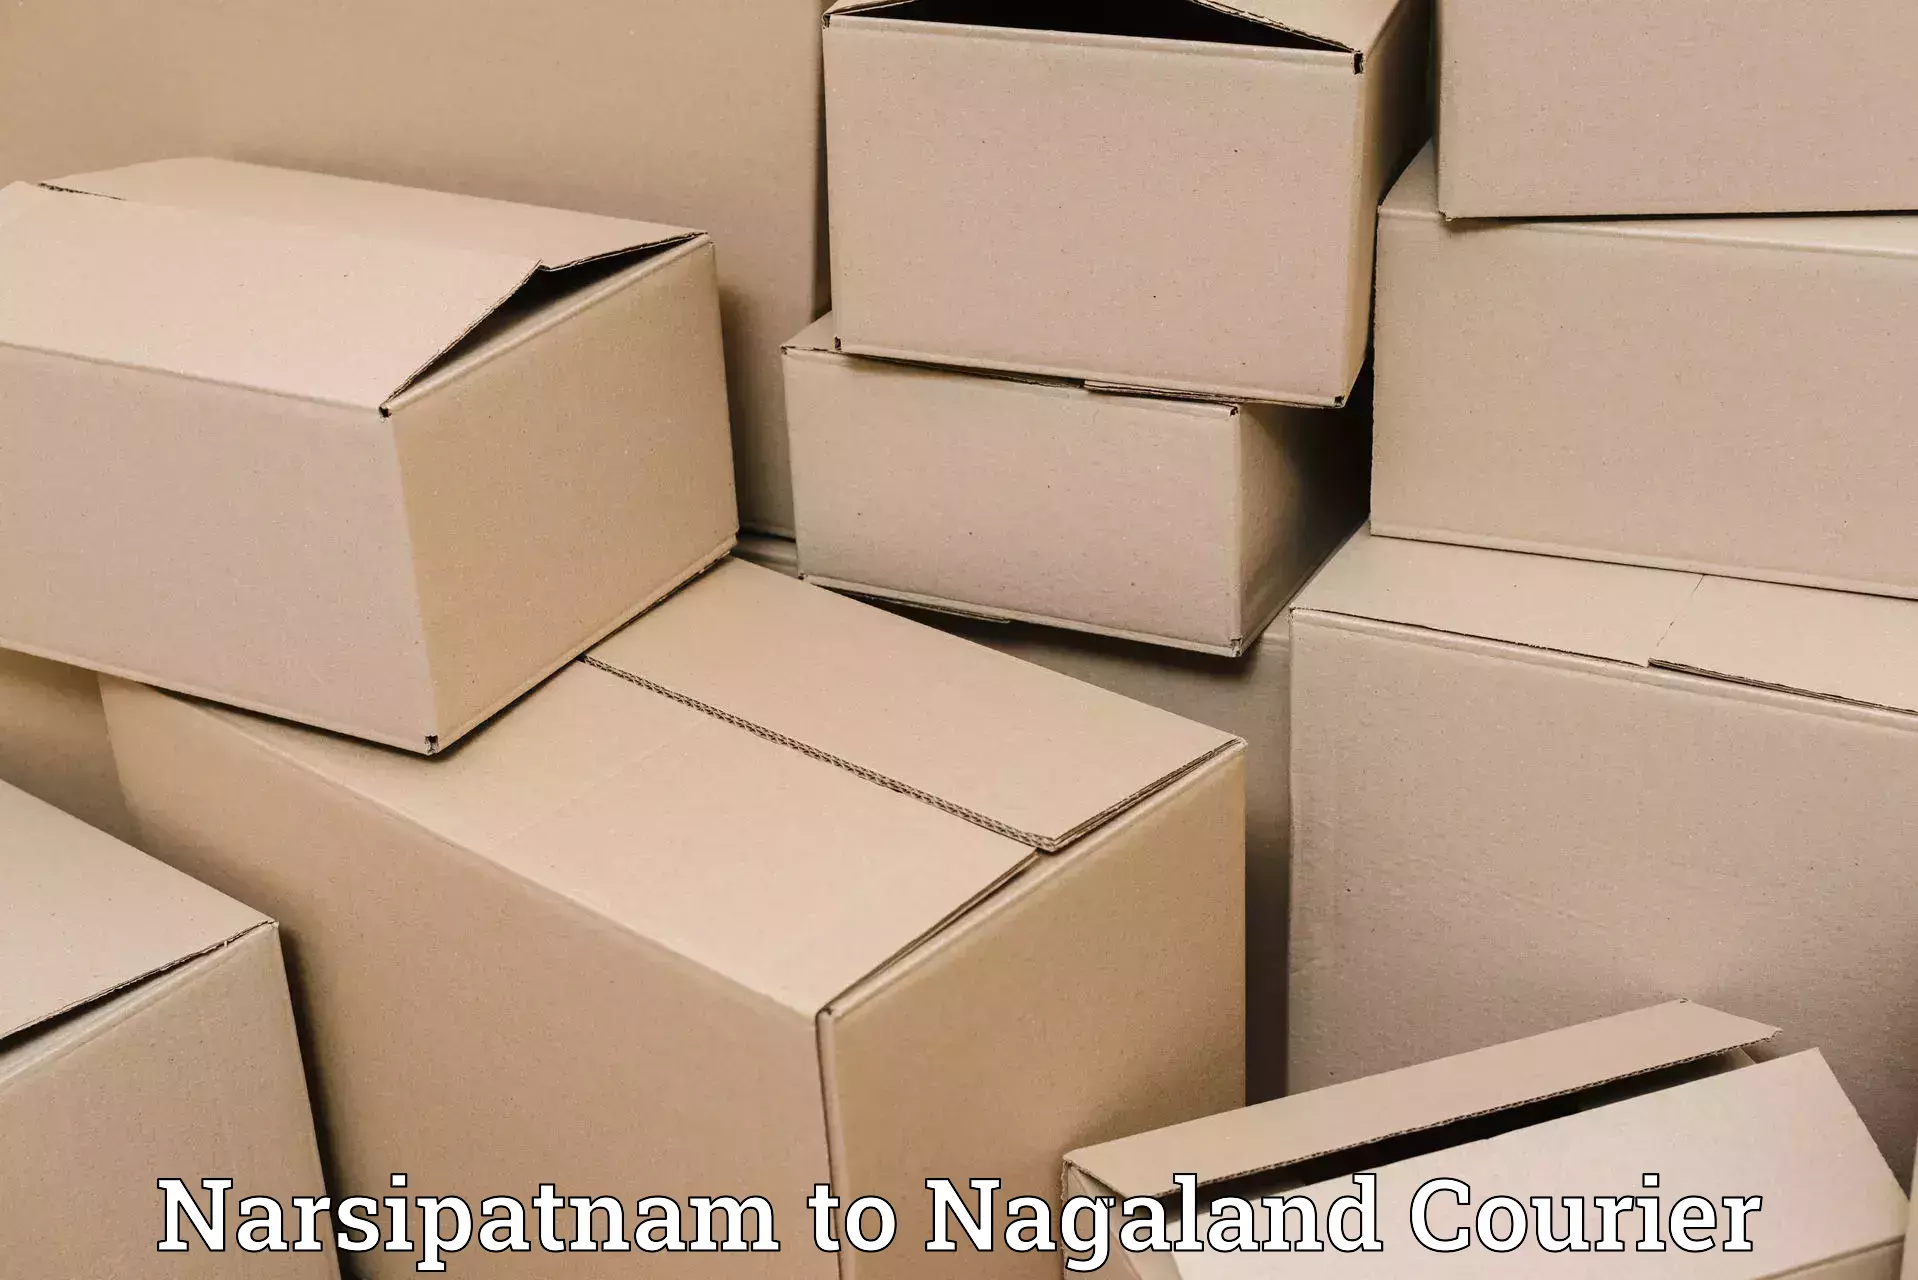 Advanced shipping technology Narsipatnam to Zunheboto